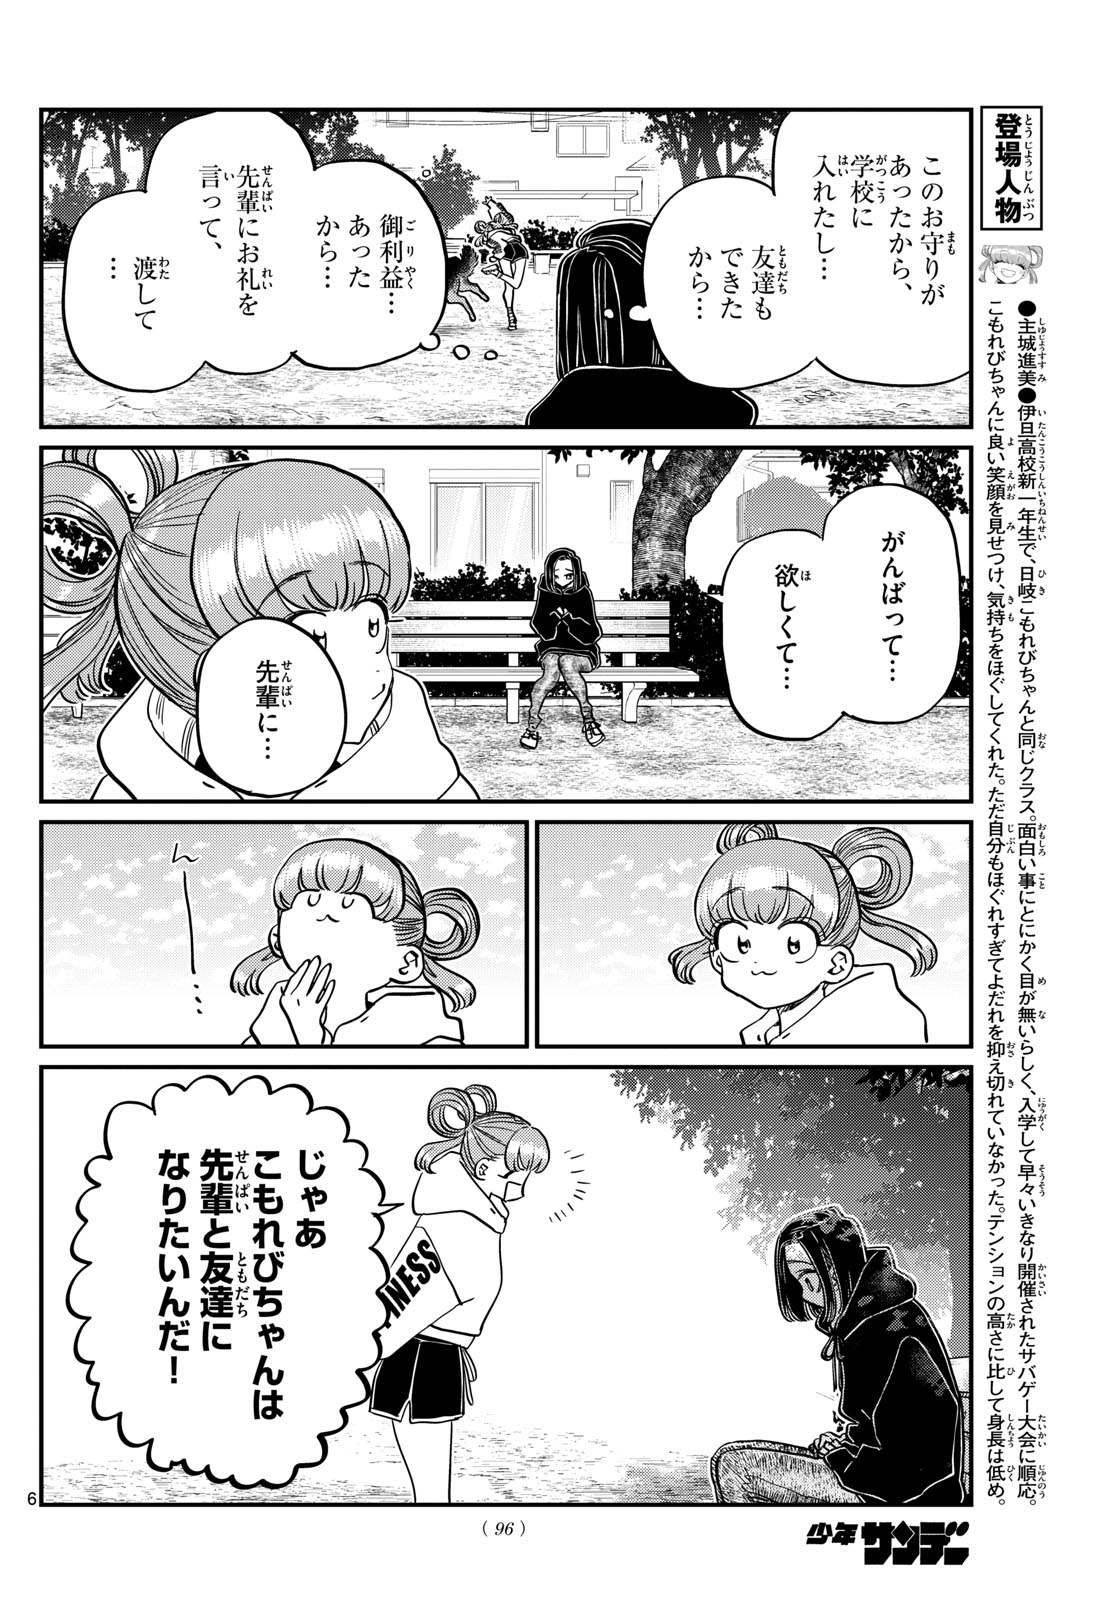 Komi-san wa Komyushou Desu - Chapter 436 - Page 6